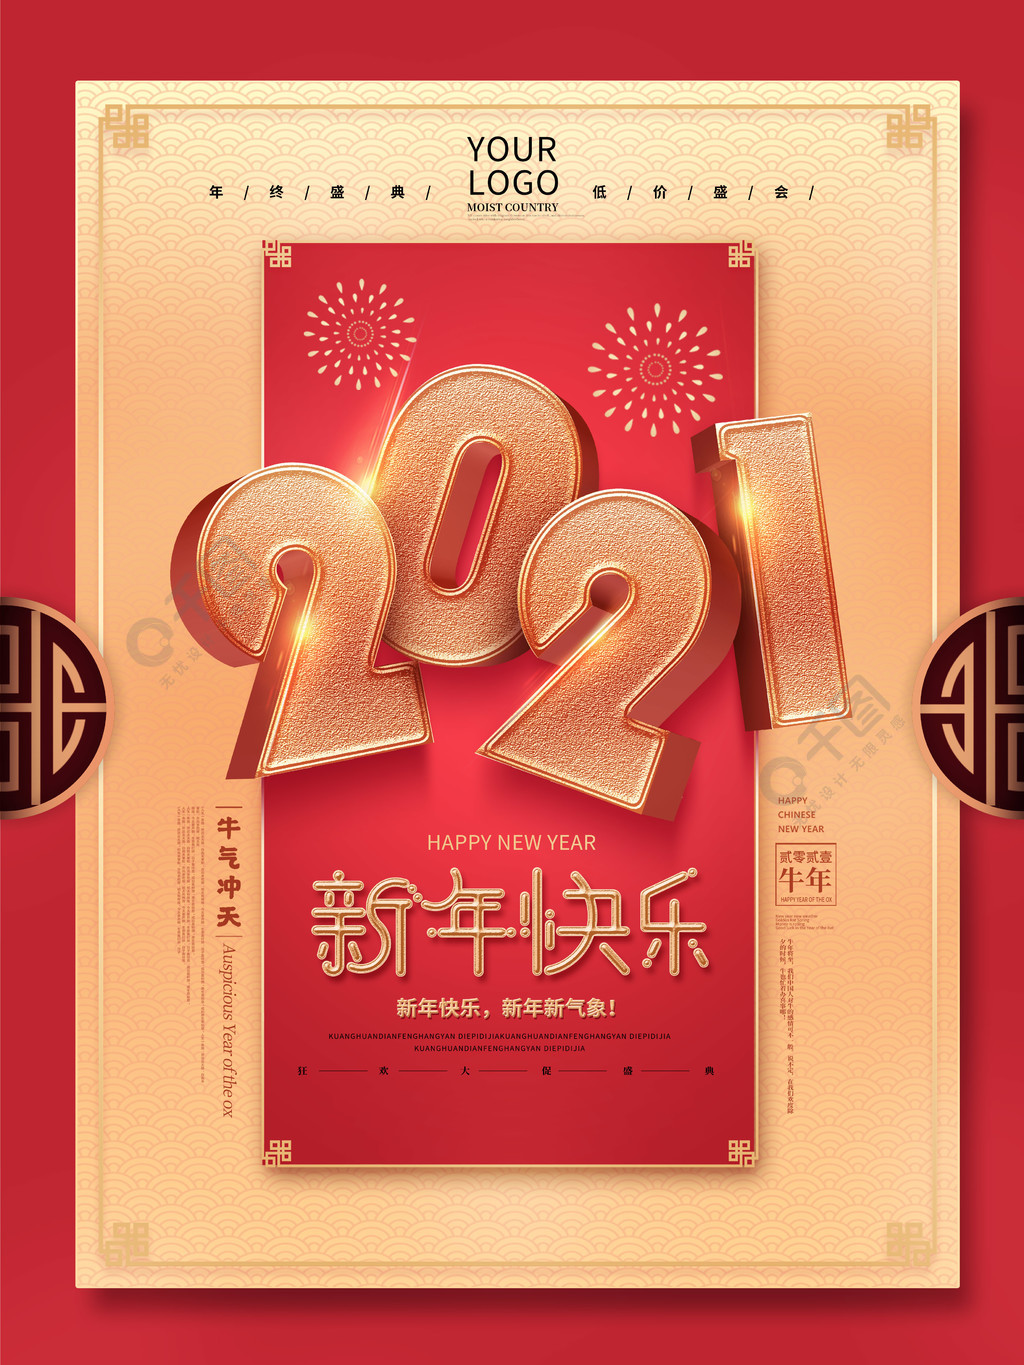 原创2021新年快乐创意字体节假日海报